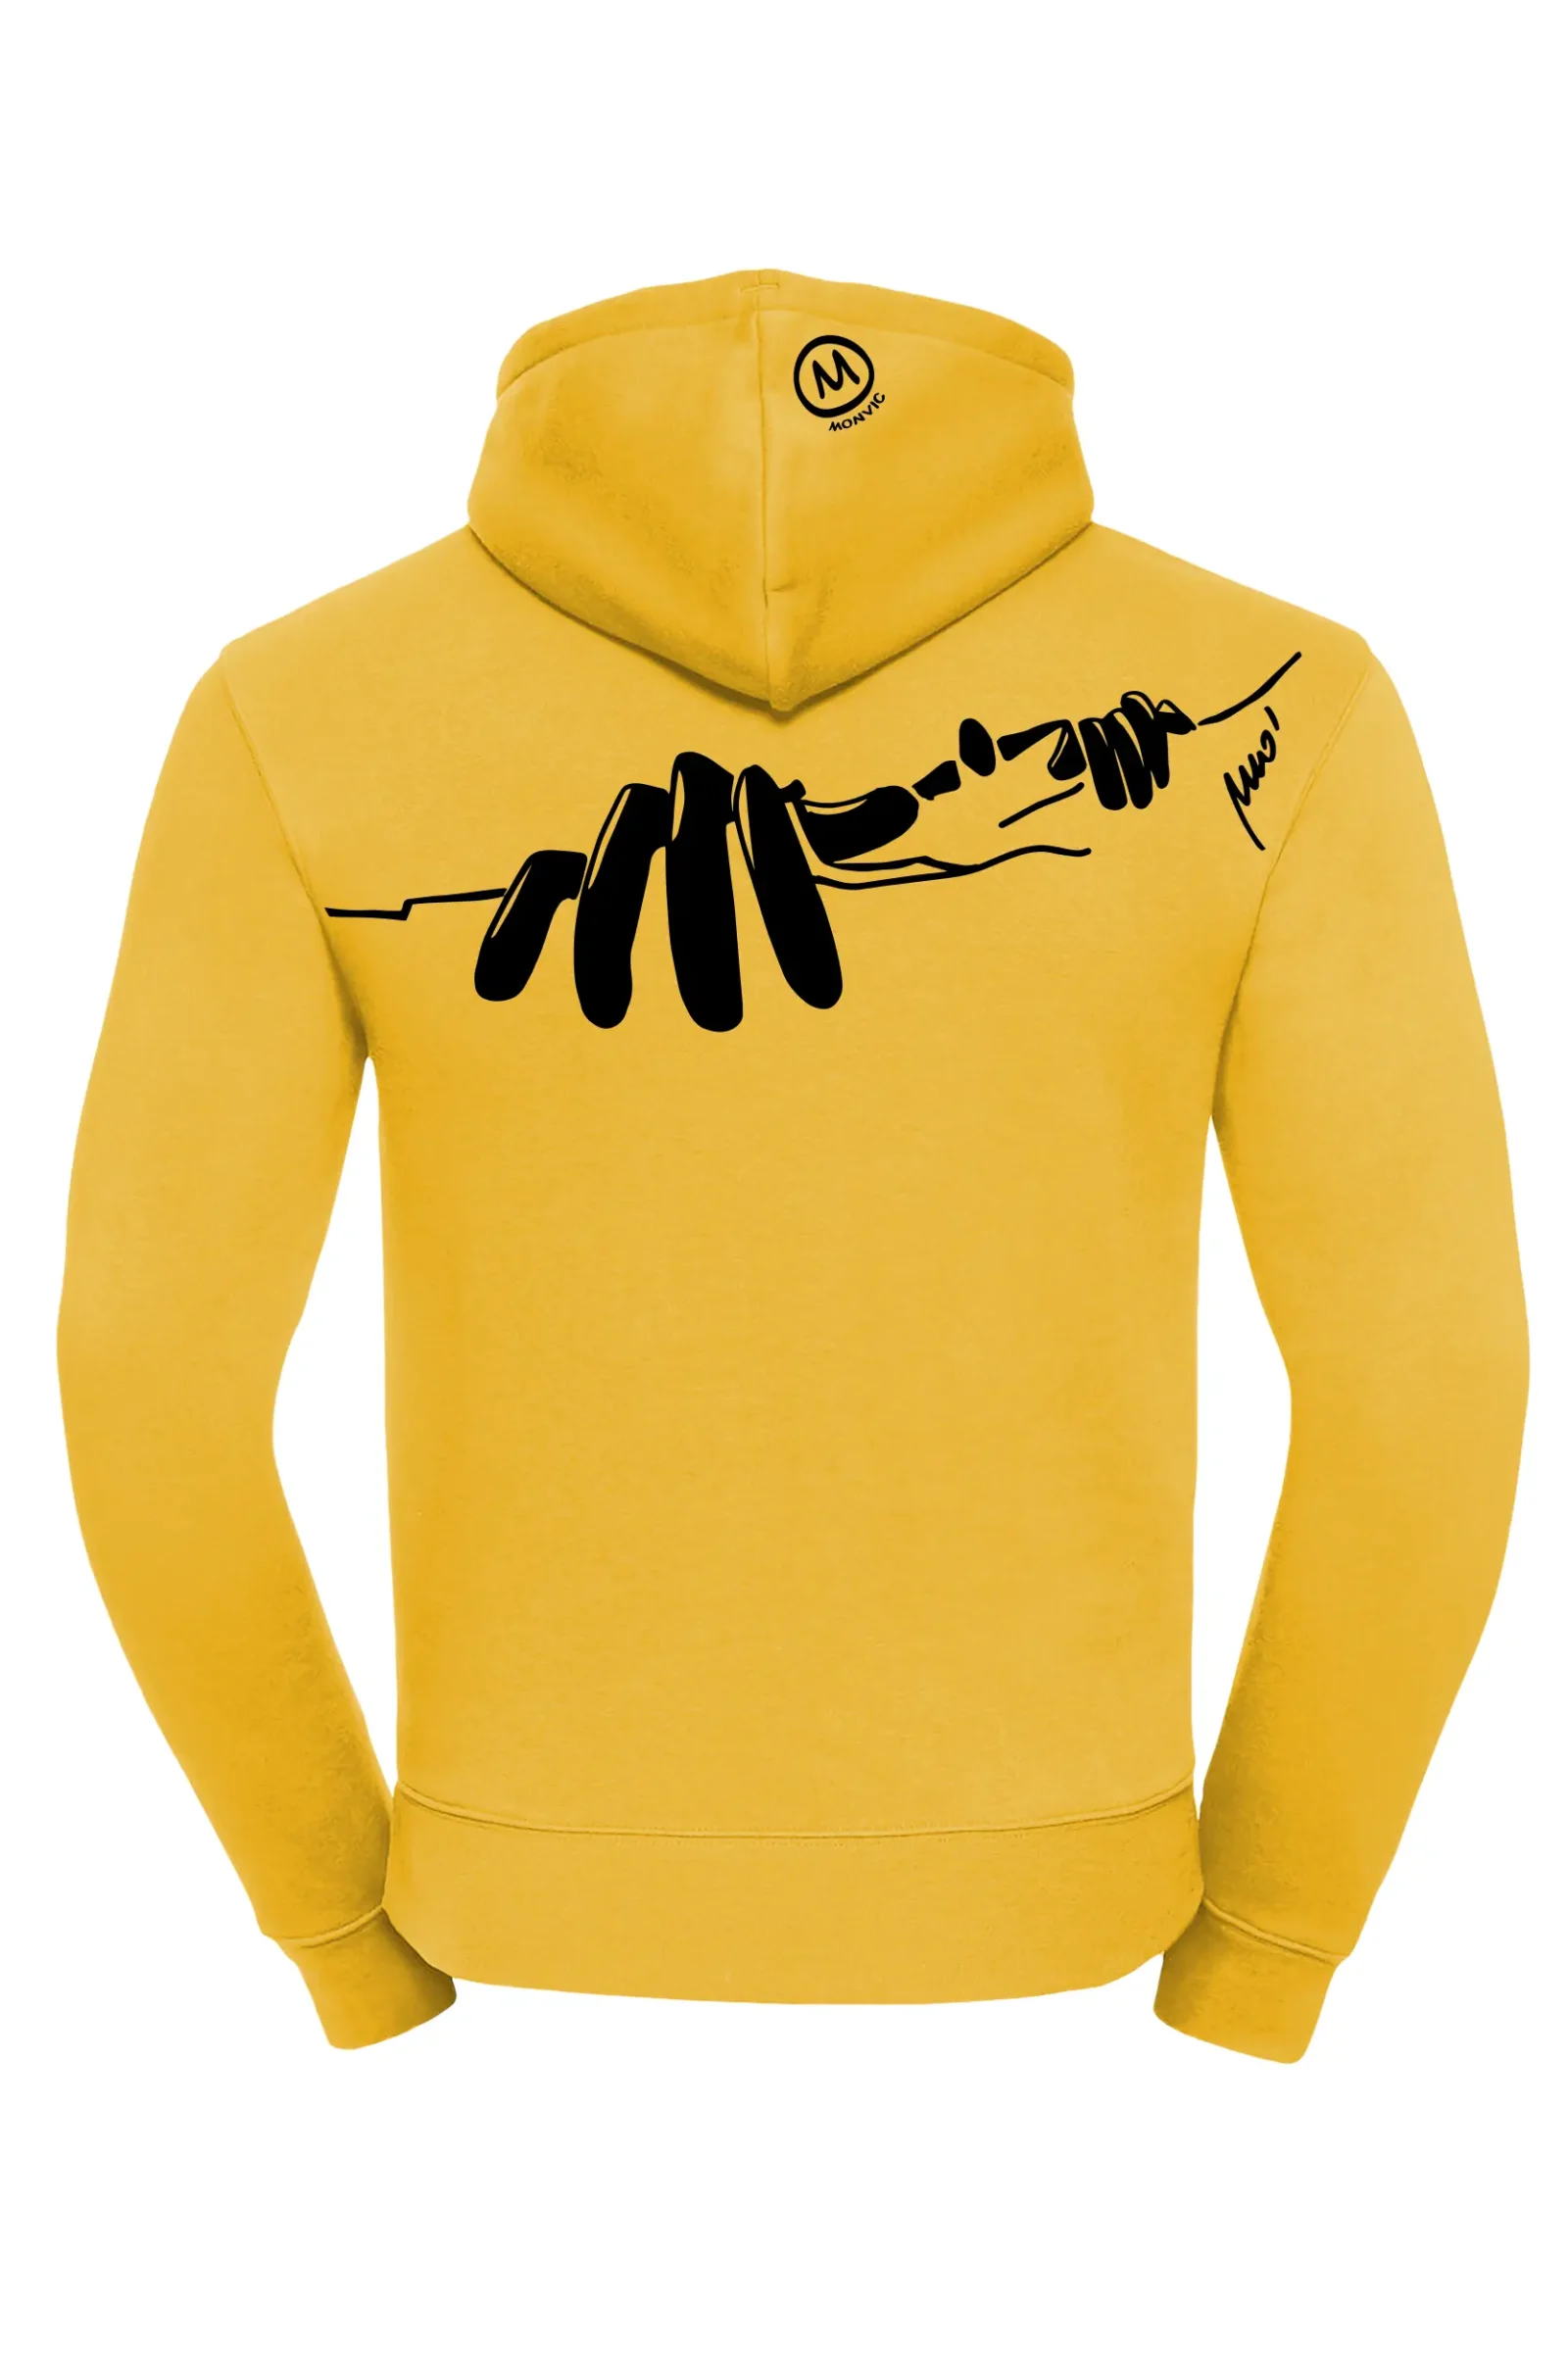 Men's climbing hooded sweatshirt - yellow - "Manone" NAVAJO MONVIC